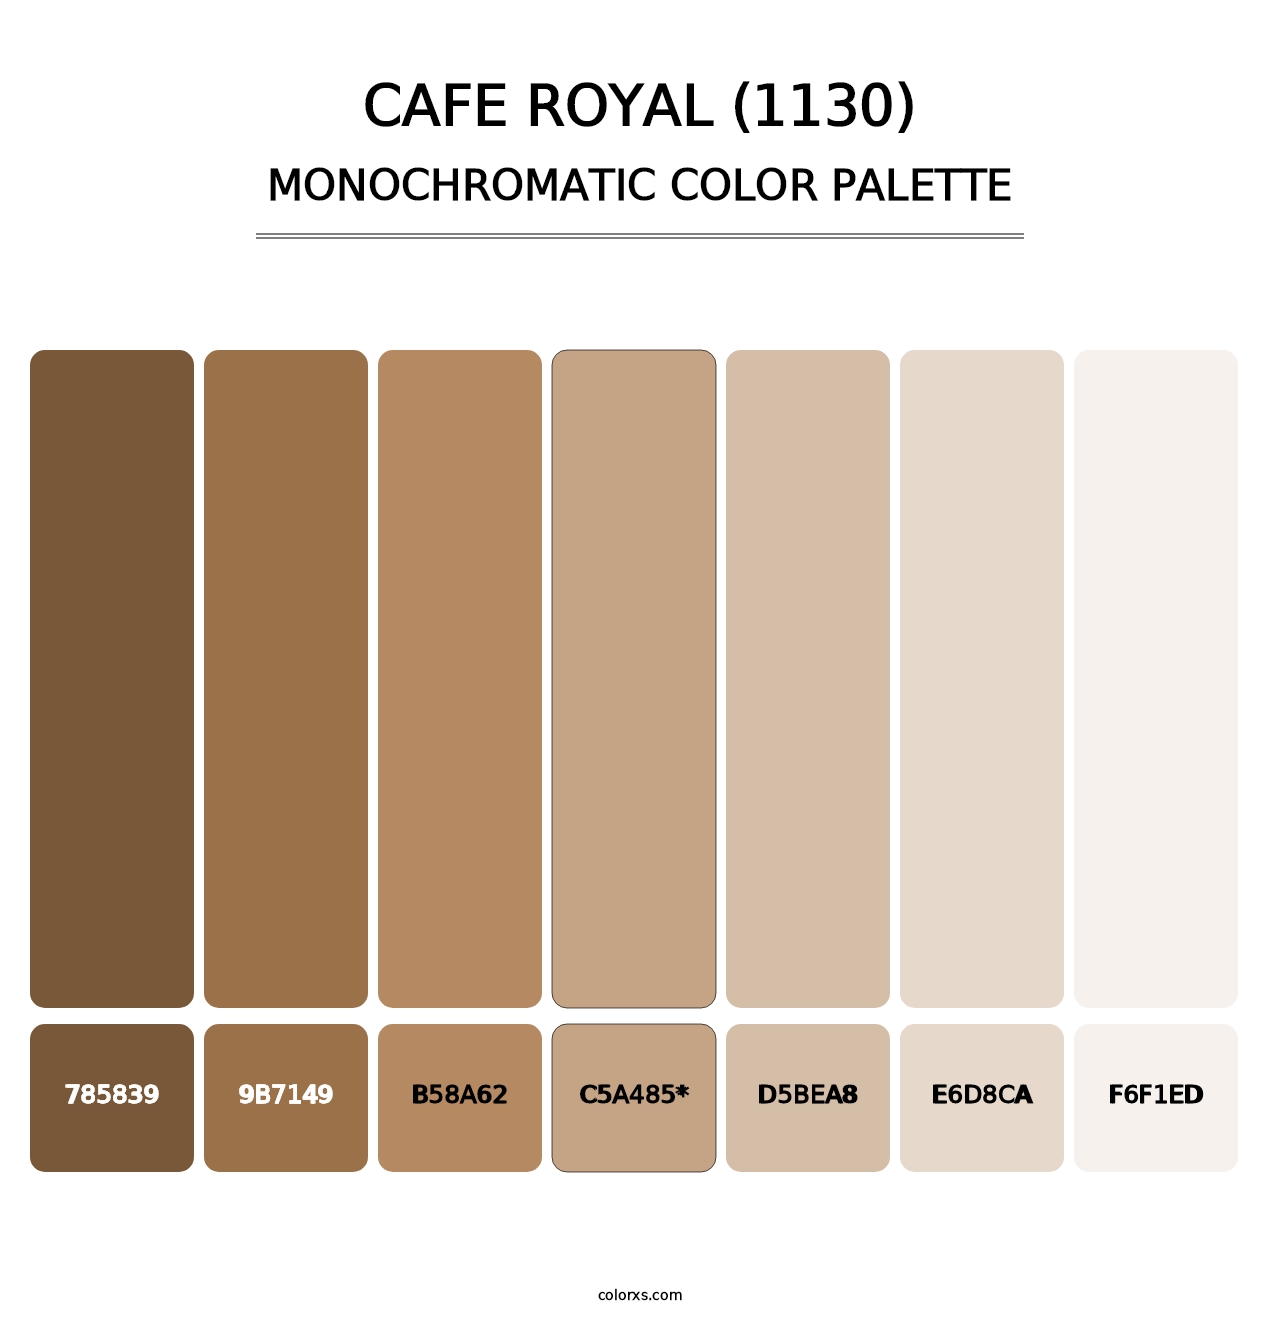 Cafe Royal (1130) - Monochromatic Color Palette